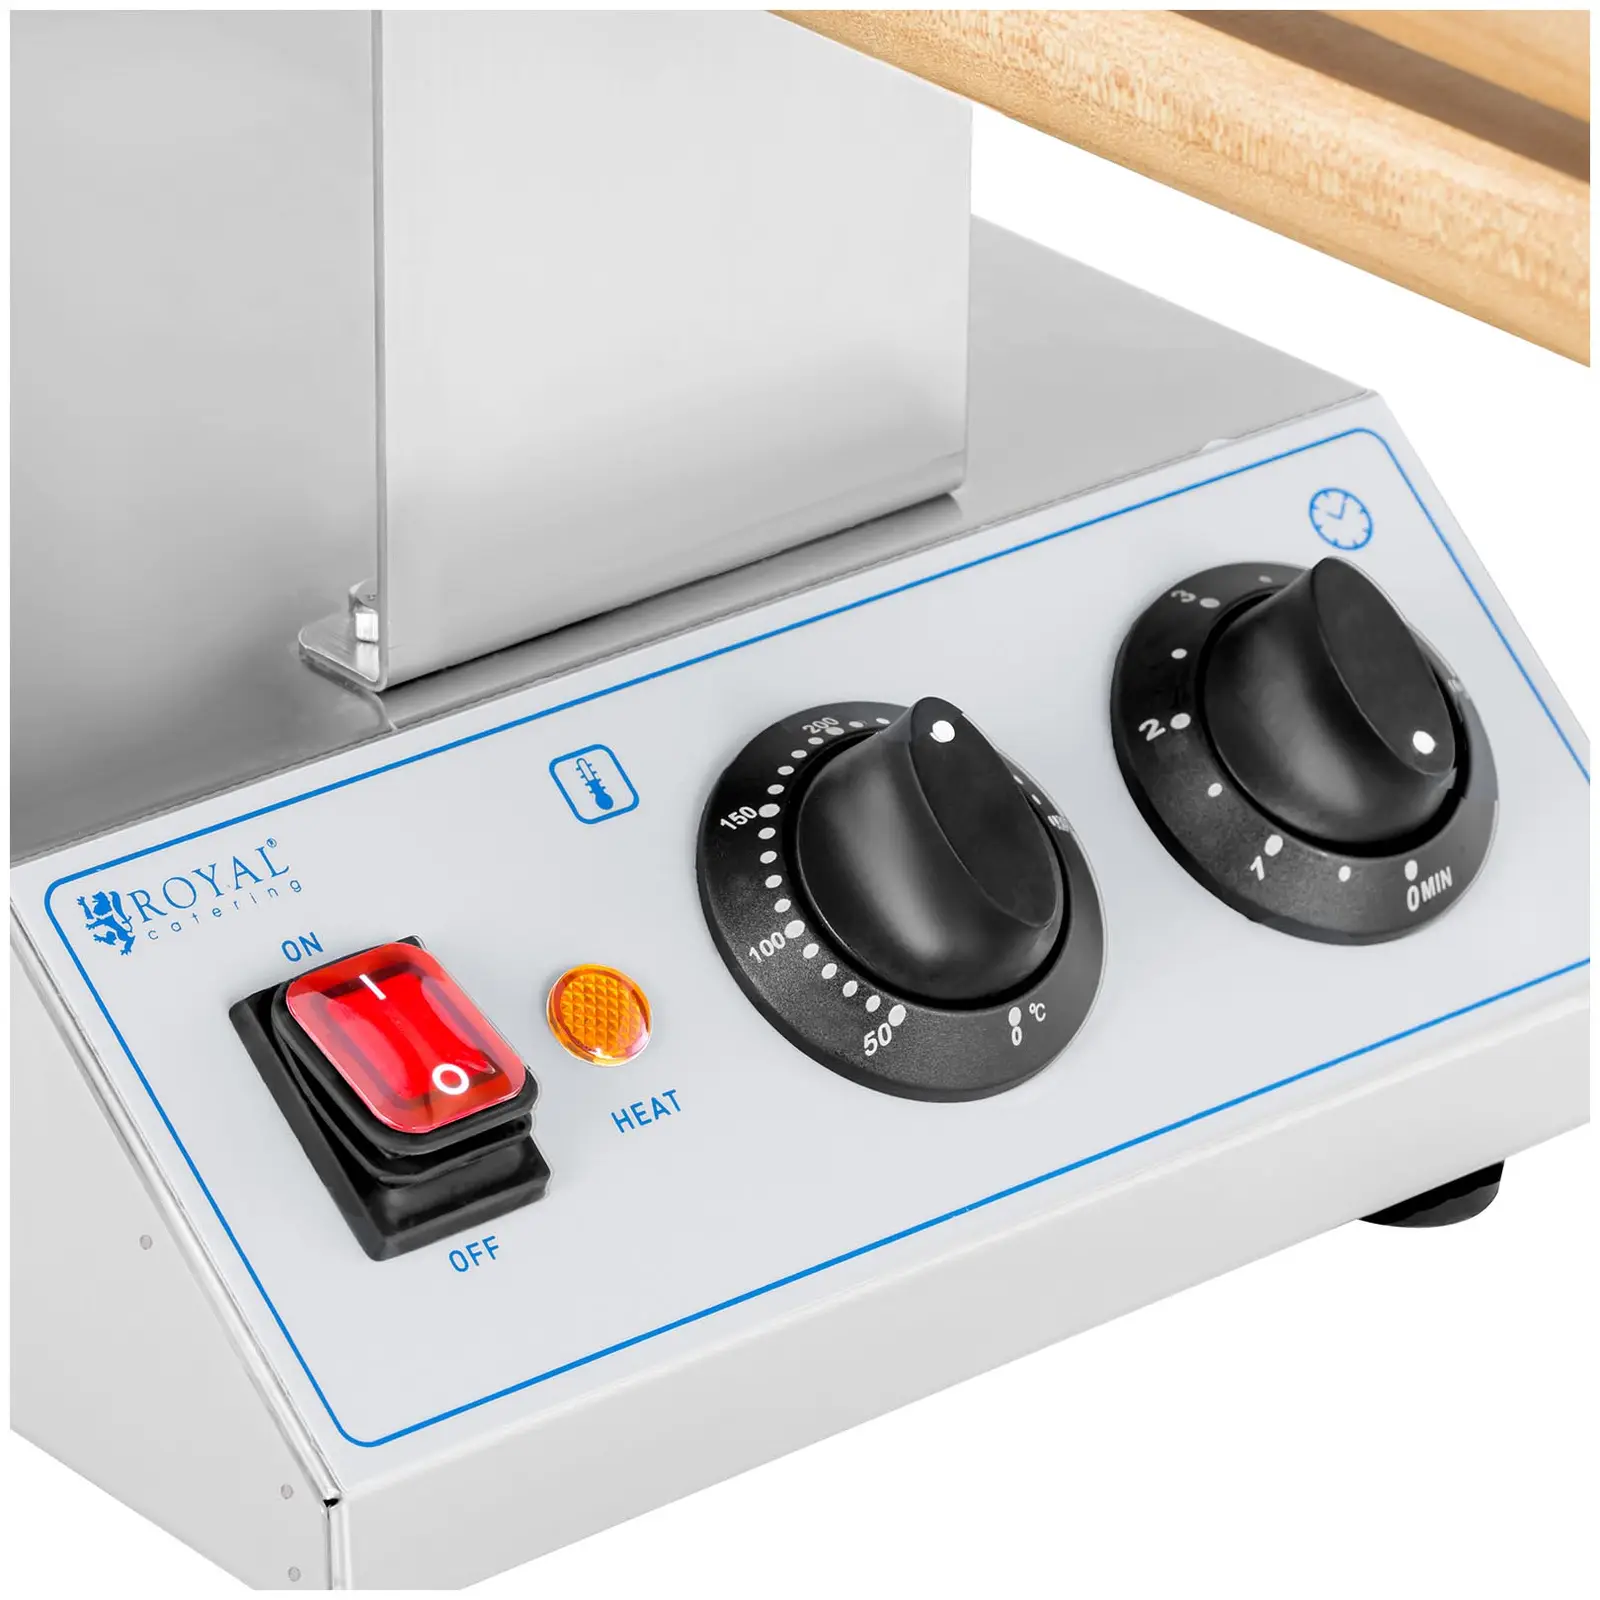 Máquina de waffles - bubble - 1,415 W - 50-250°C - temporizador: 0-5 min